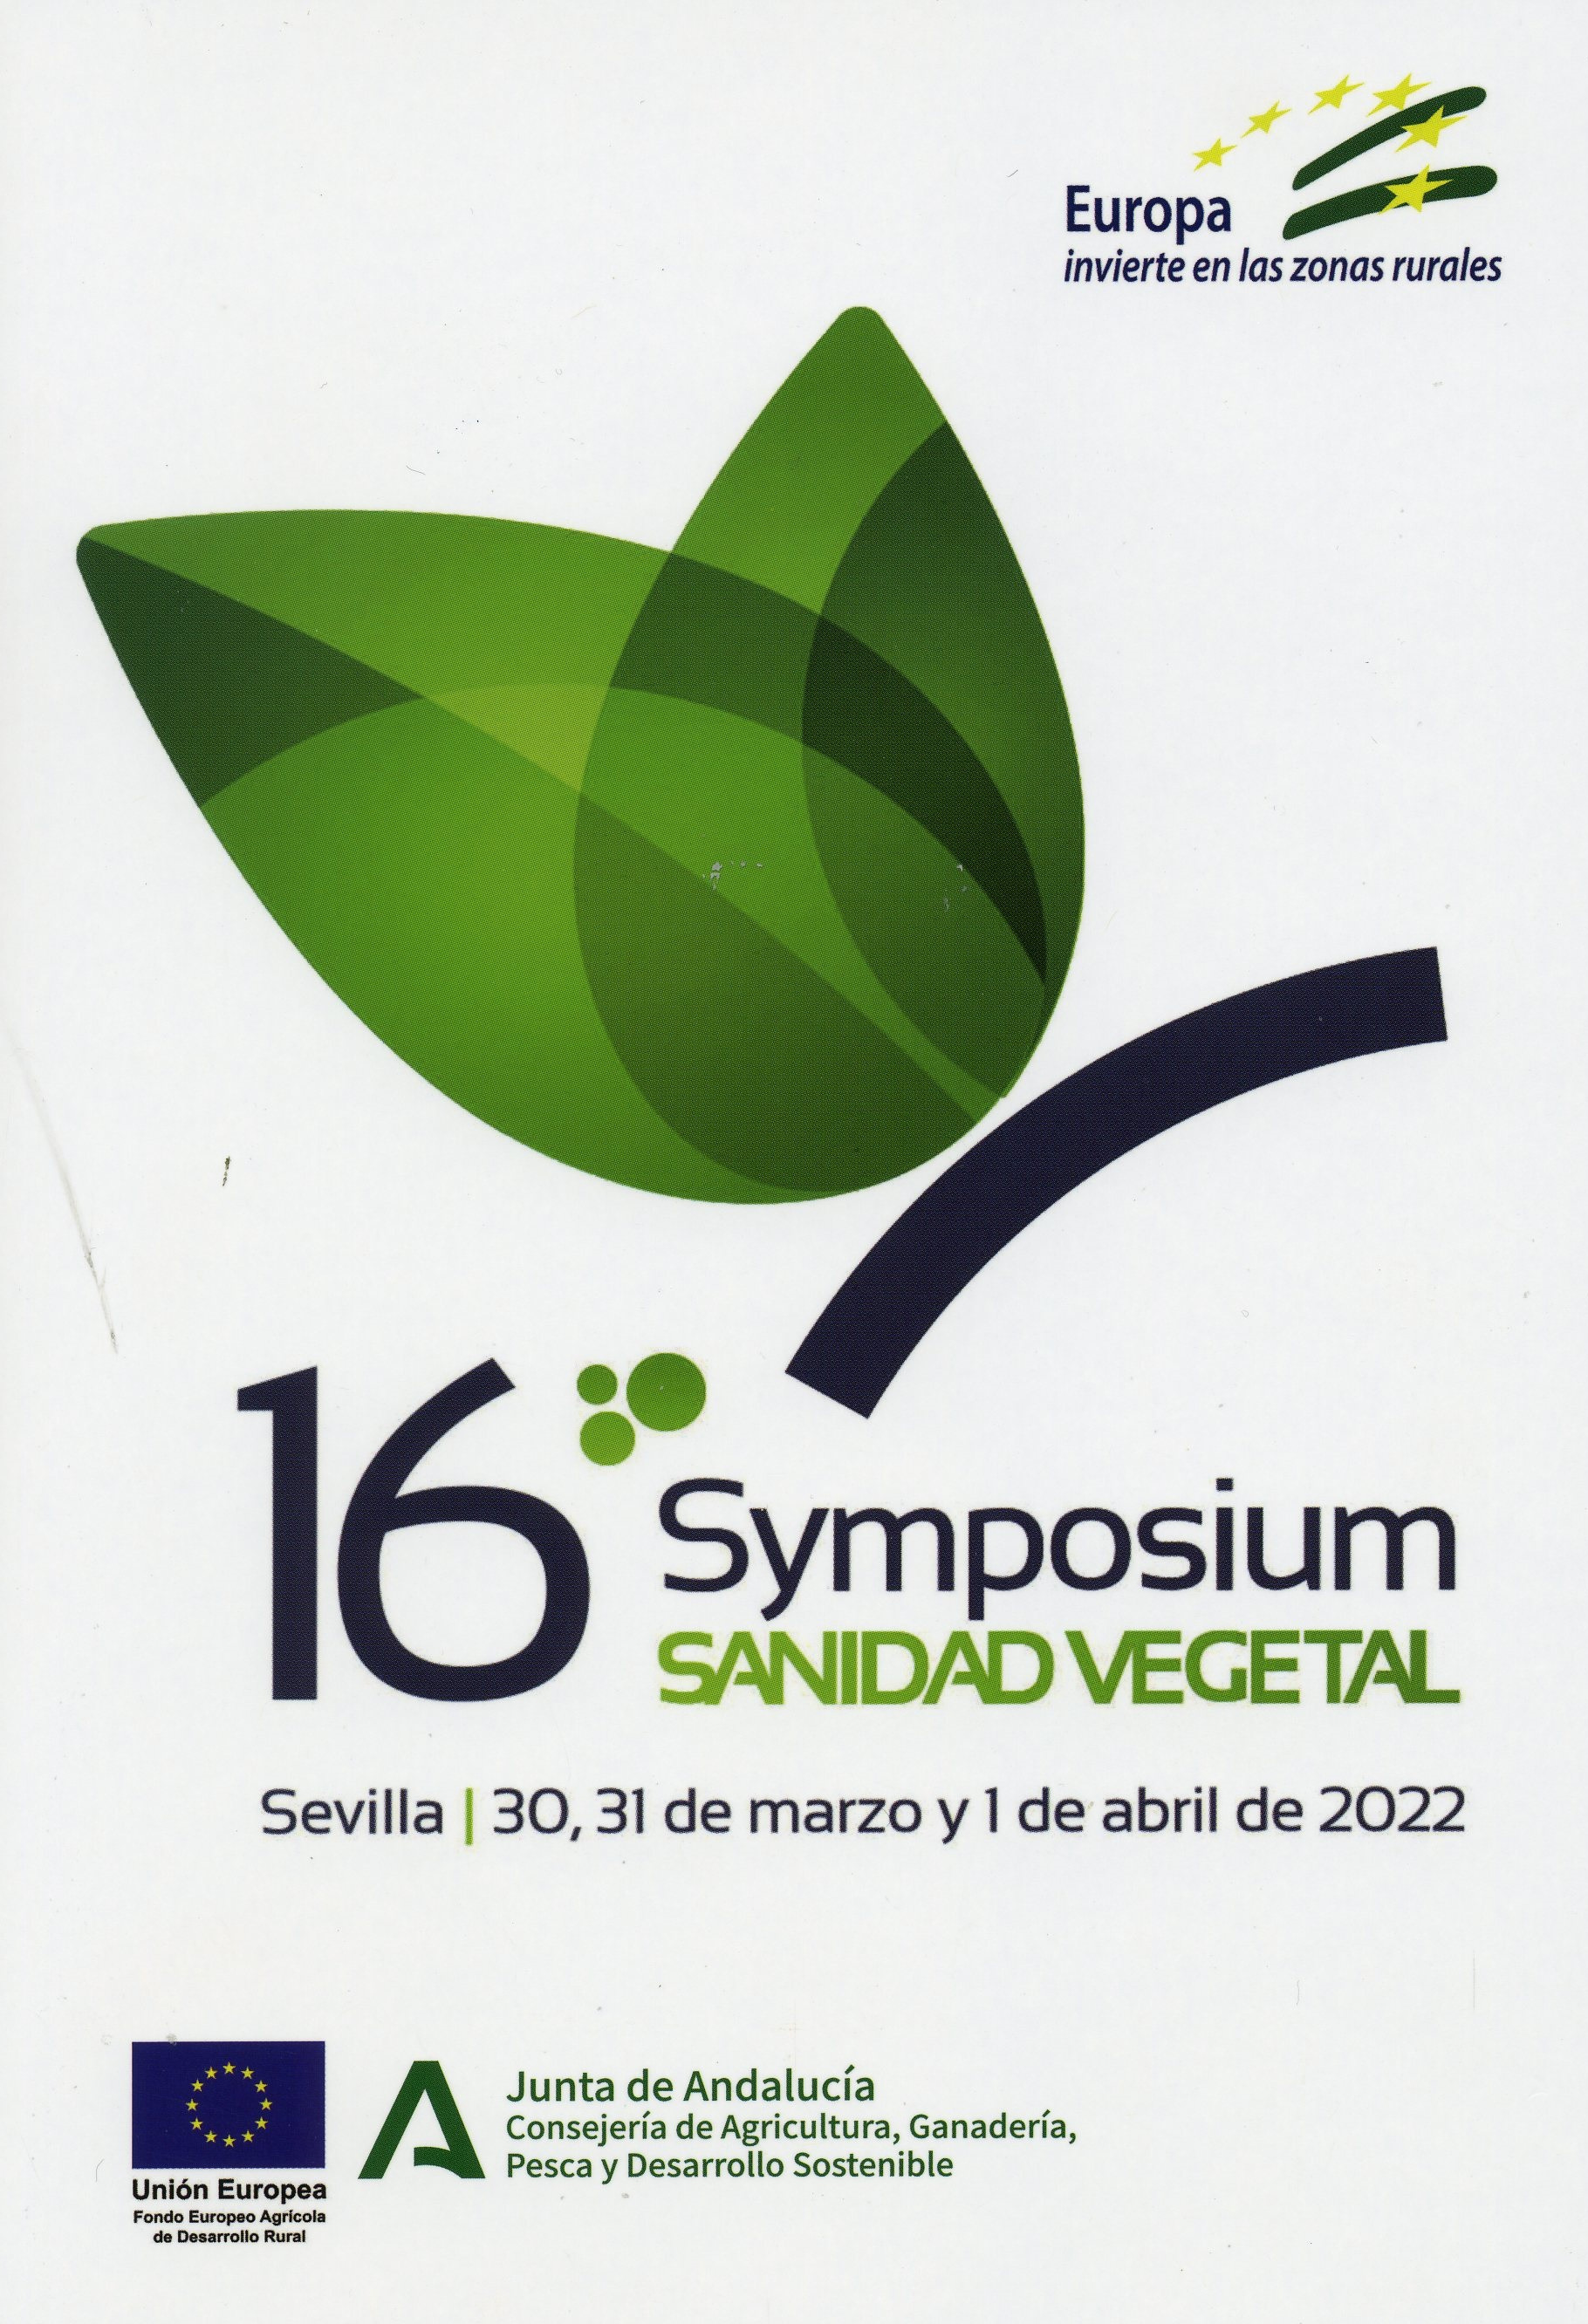 16_Symposium_Sanidad_Vegetal.jpg